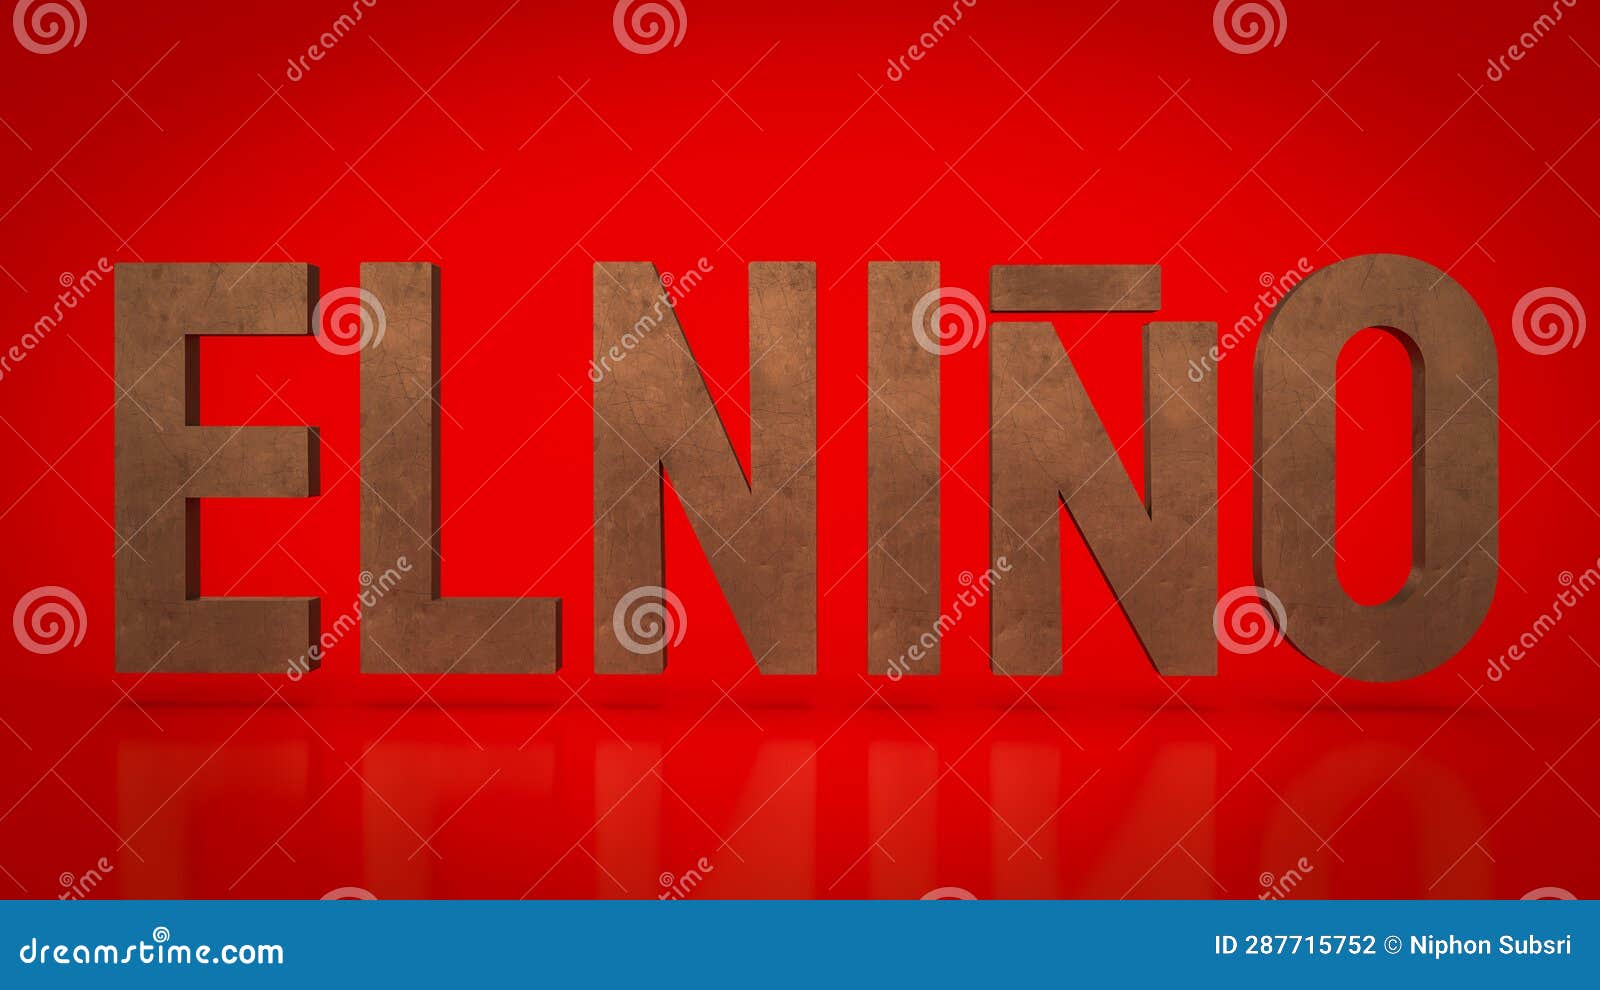 the el niÃÂ±o text on red background 3d rendering